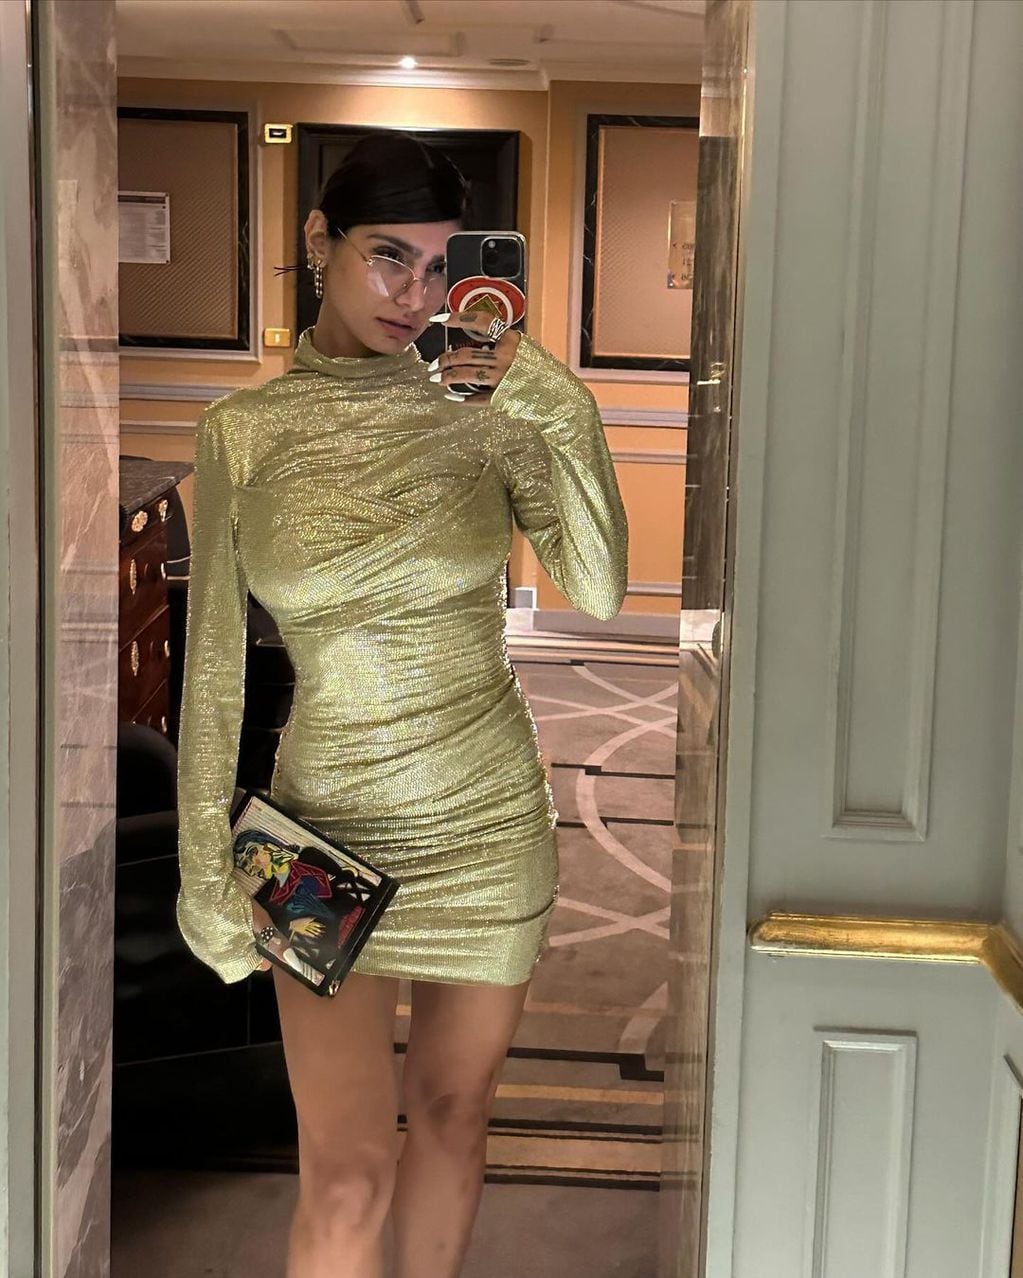 Mia Khalifa encandiló con un vestido dorado